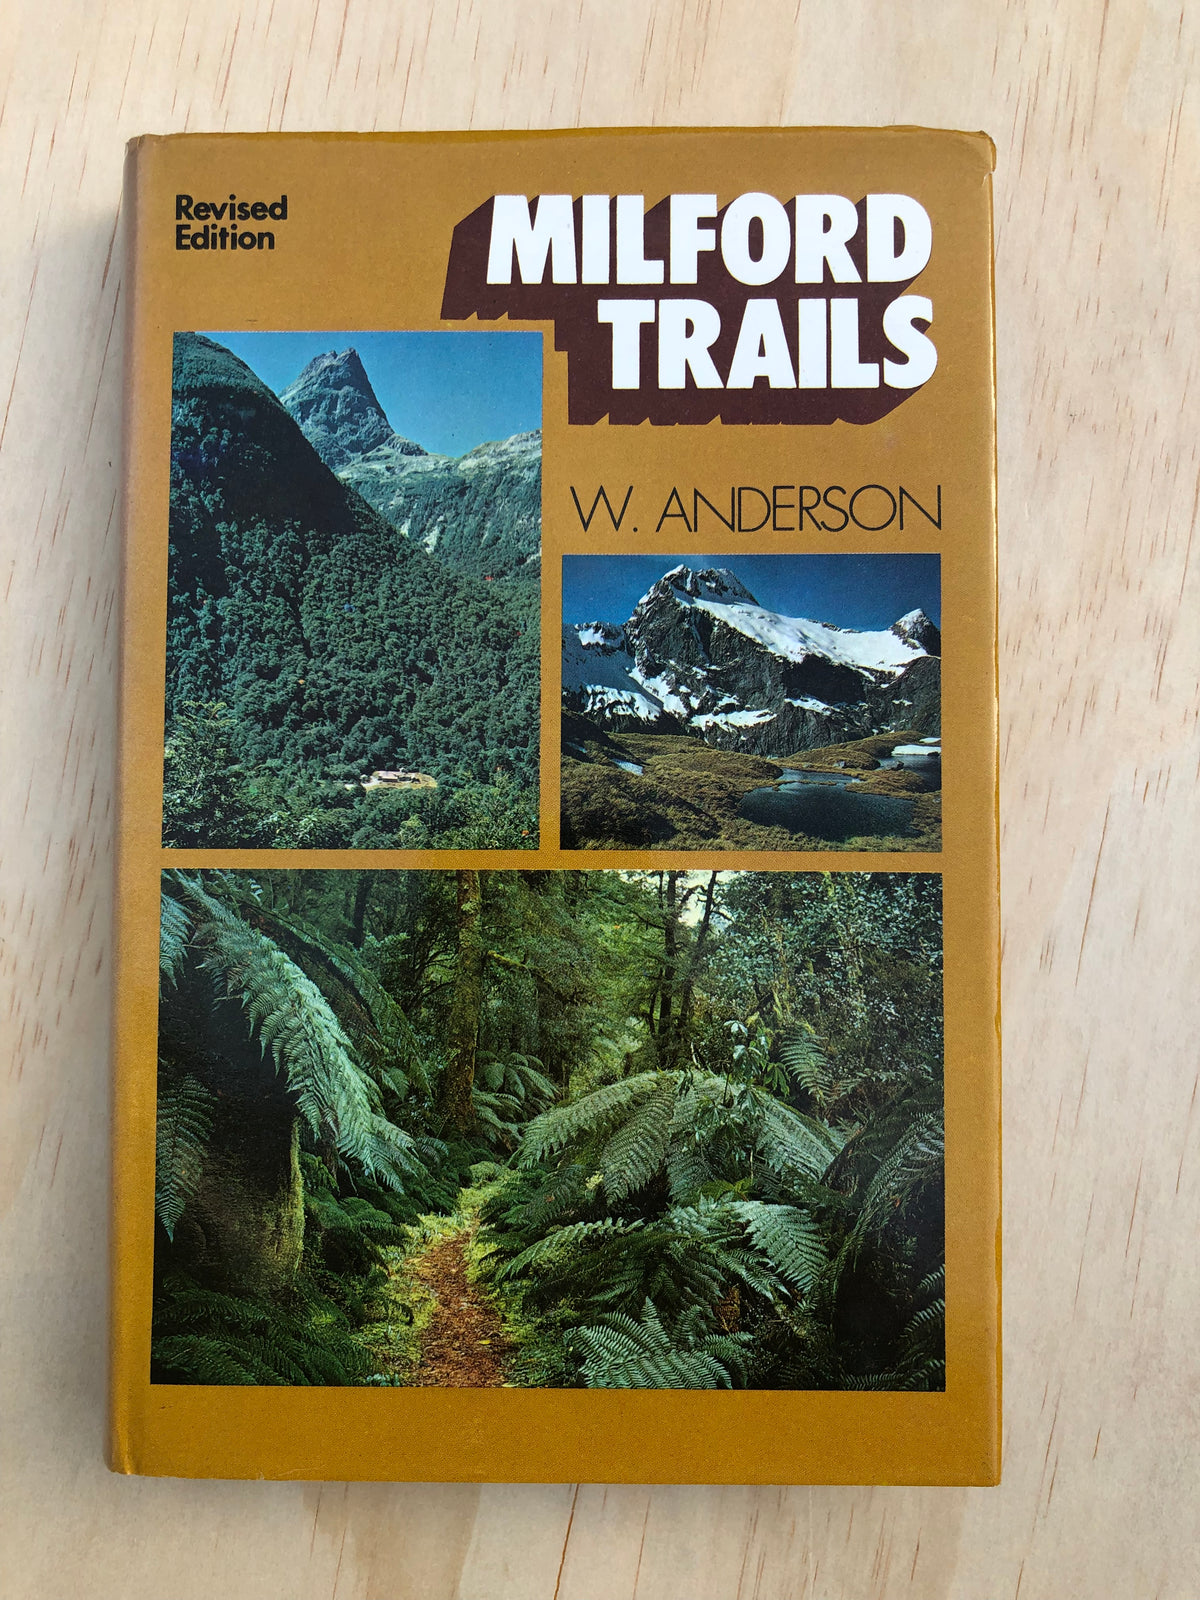 Milford Trails - W. Anderson